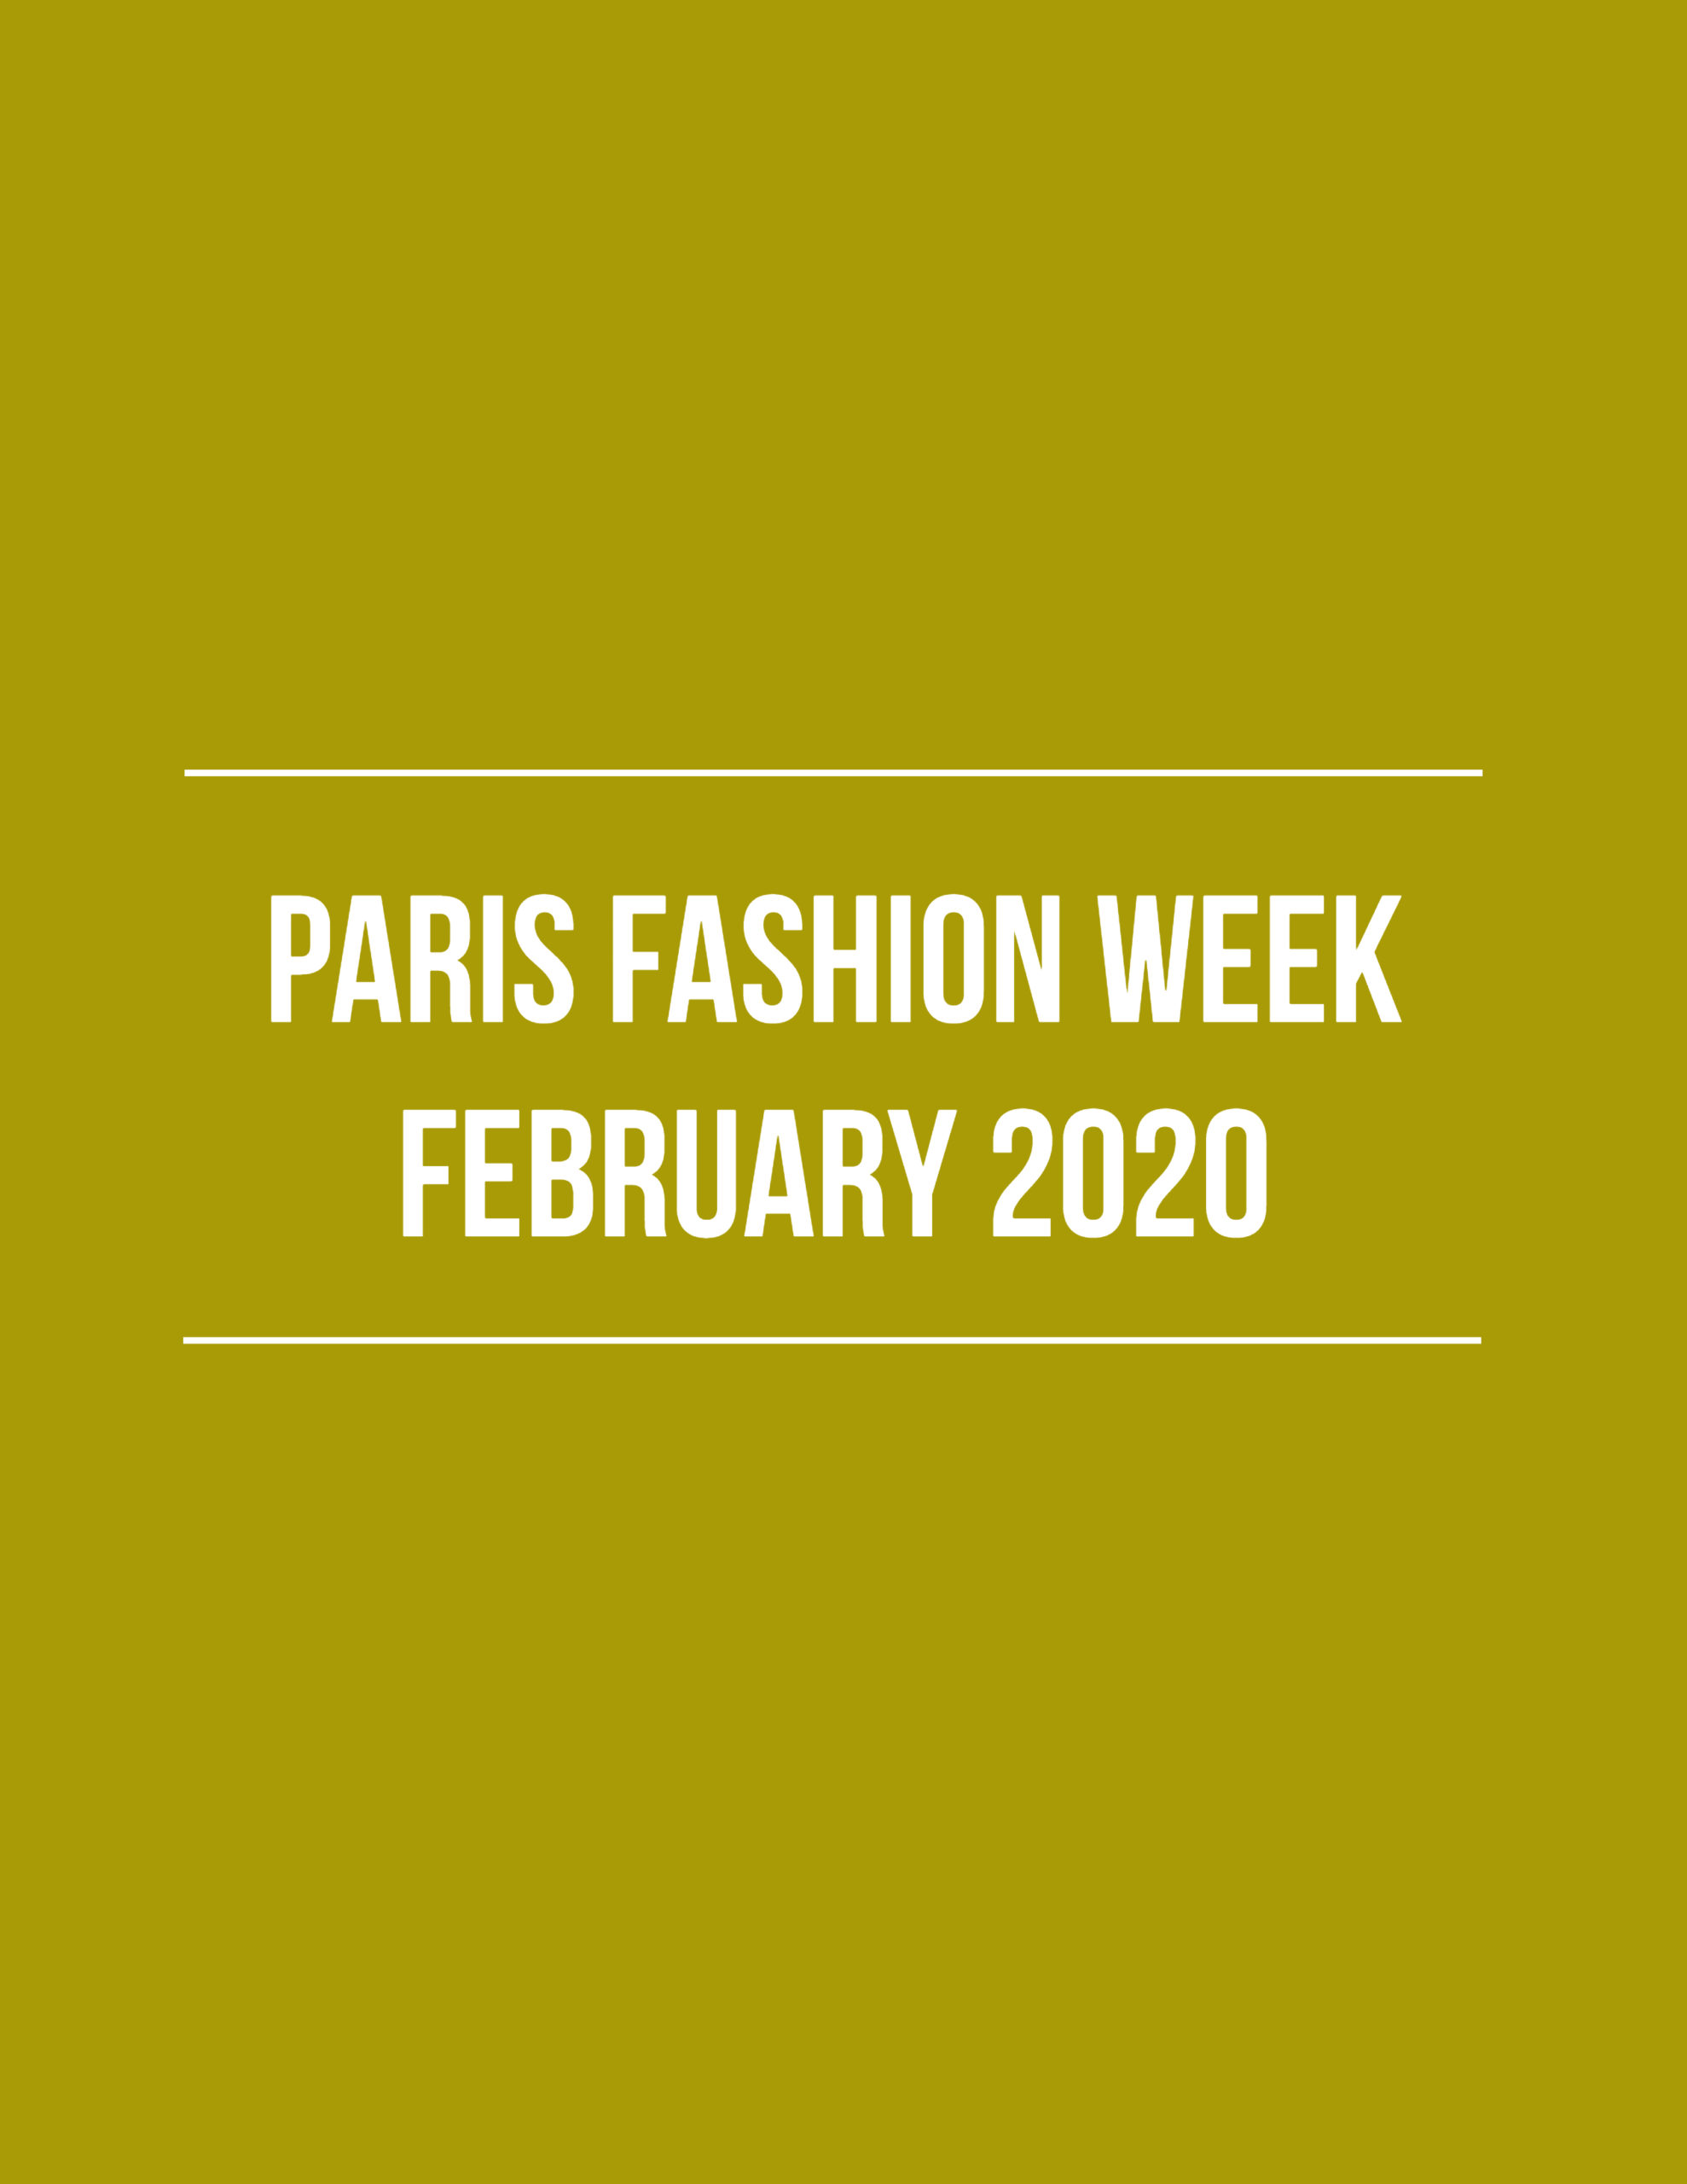 PFW February 2020 - The Fashion Folks